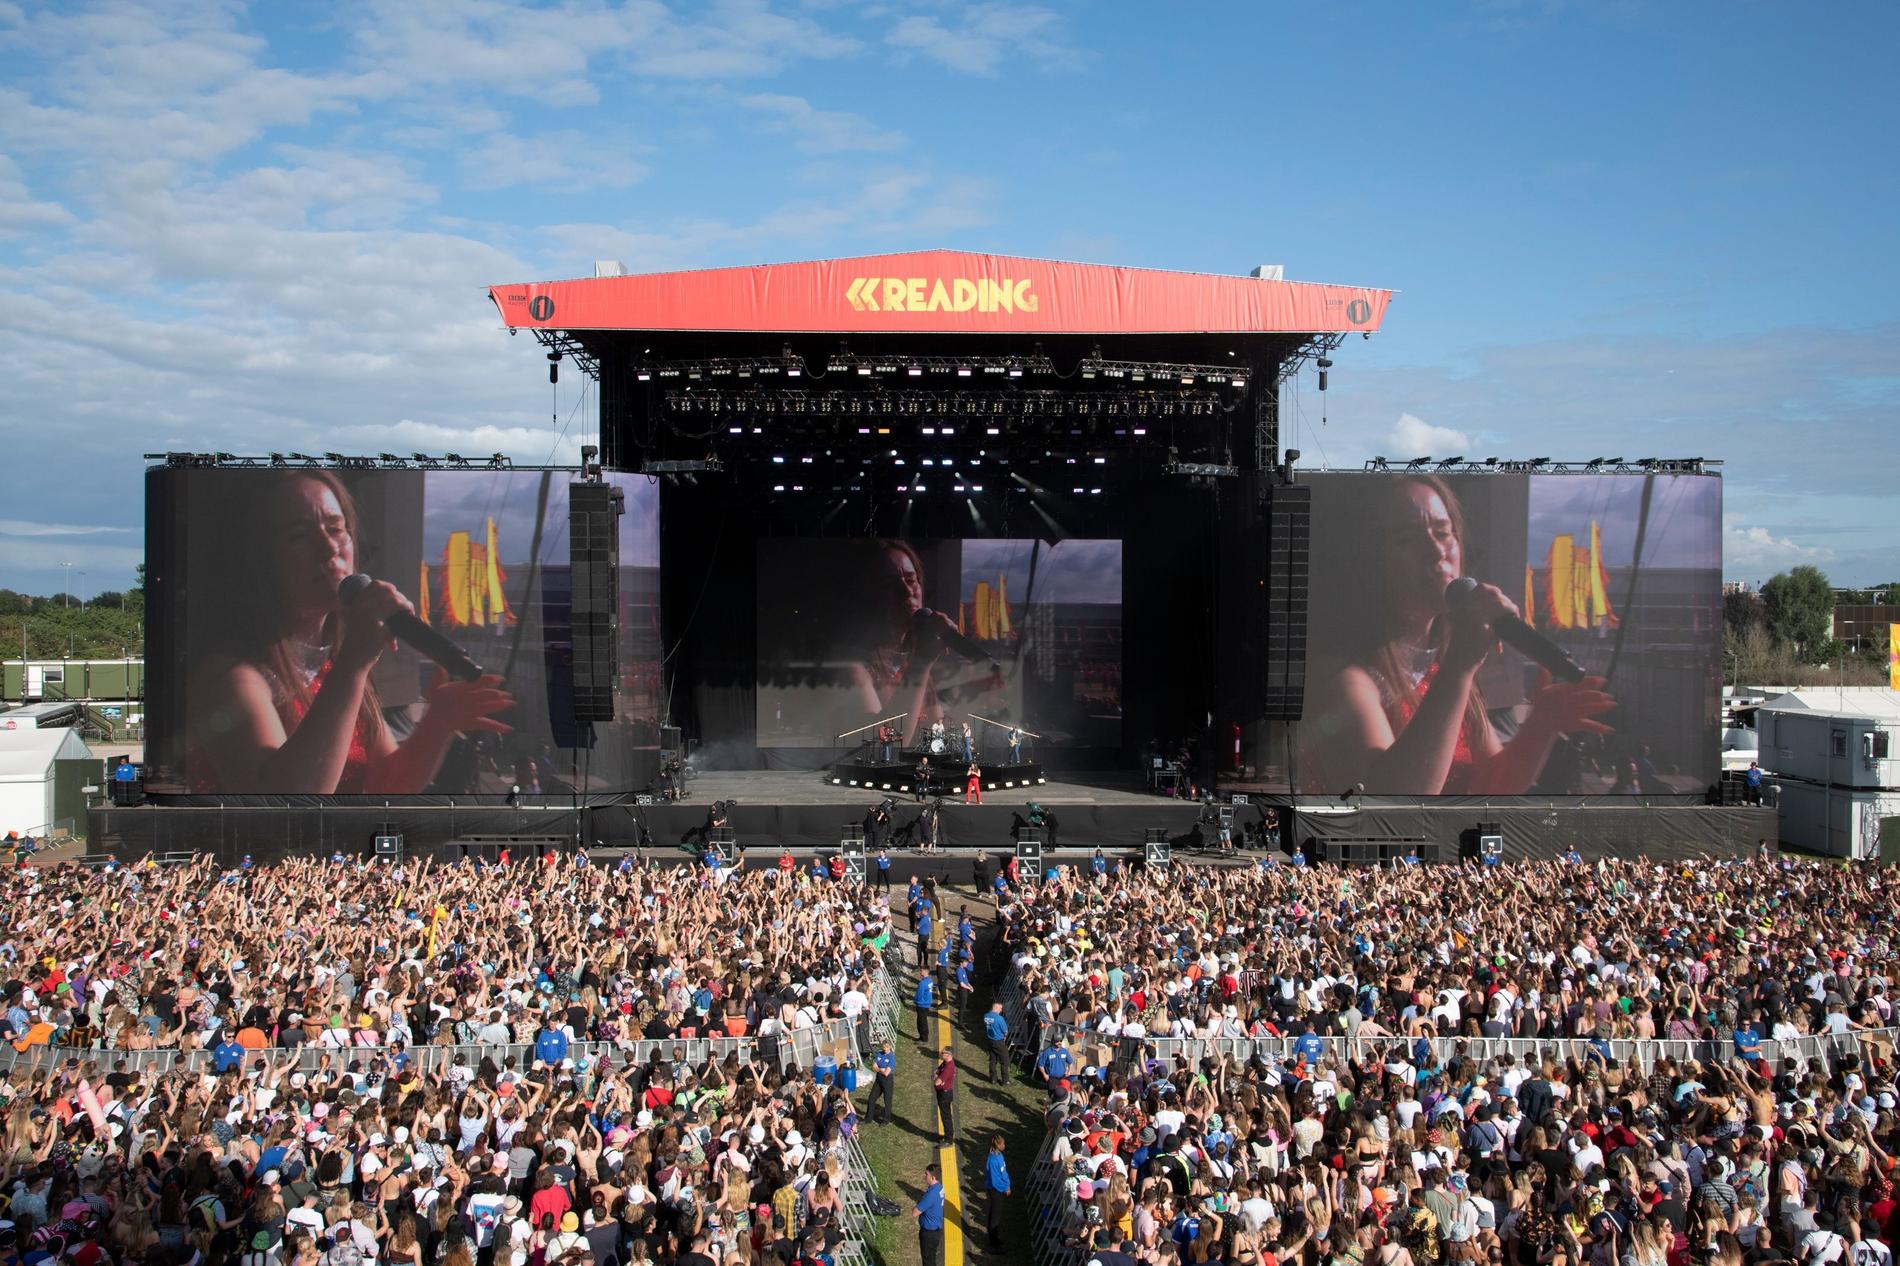 Sigrid med bandet foran 80.000 mennesker på Reading Festival i slutten av august. – Et foreløpig høydepunkt, sier Liva Austad Sværen, som har tatt en ny rolle i bandet til Sigrid.